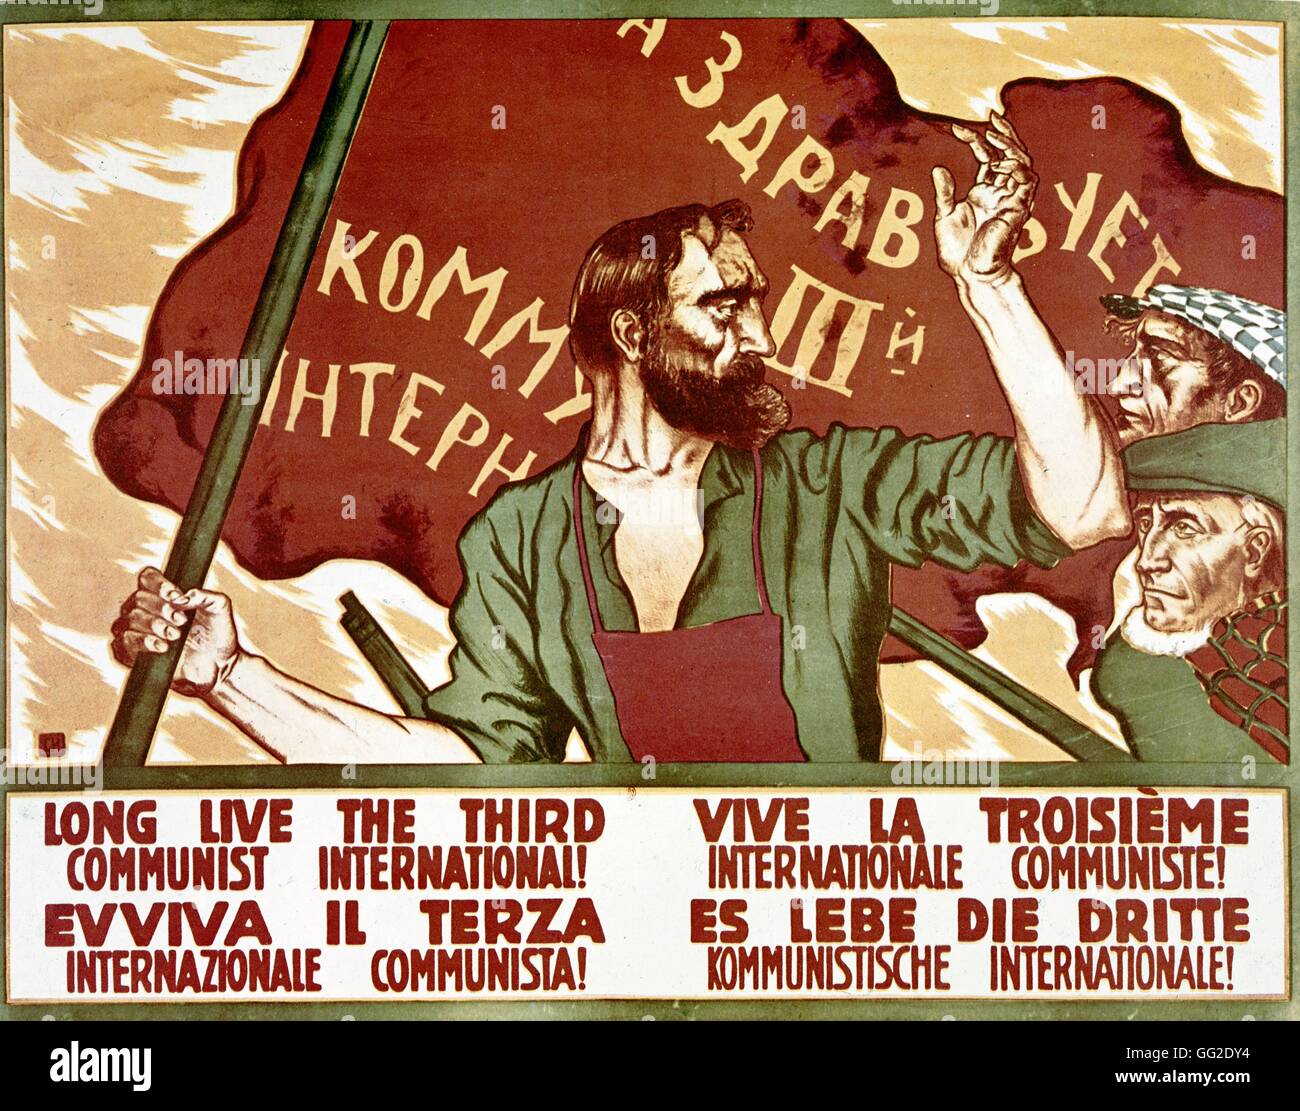 Affiche soviétique pour la 3e ou "Komintern", écrit en plusieurs langues 20e siècle URSS Banque D'Images